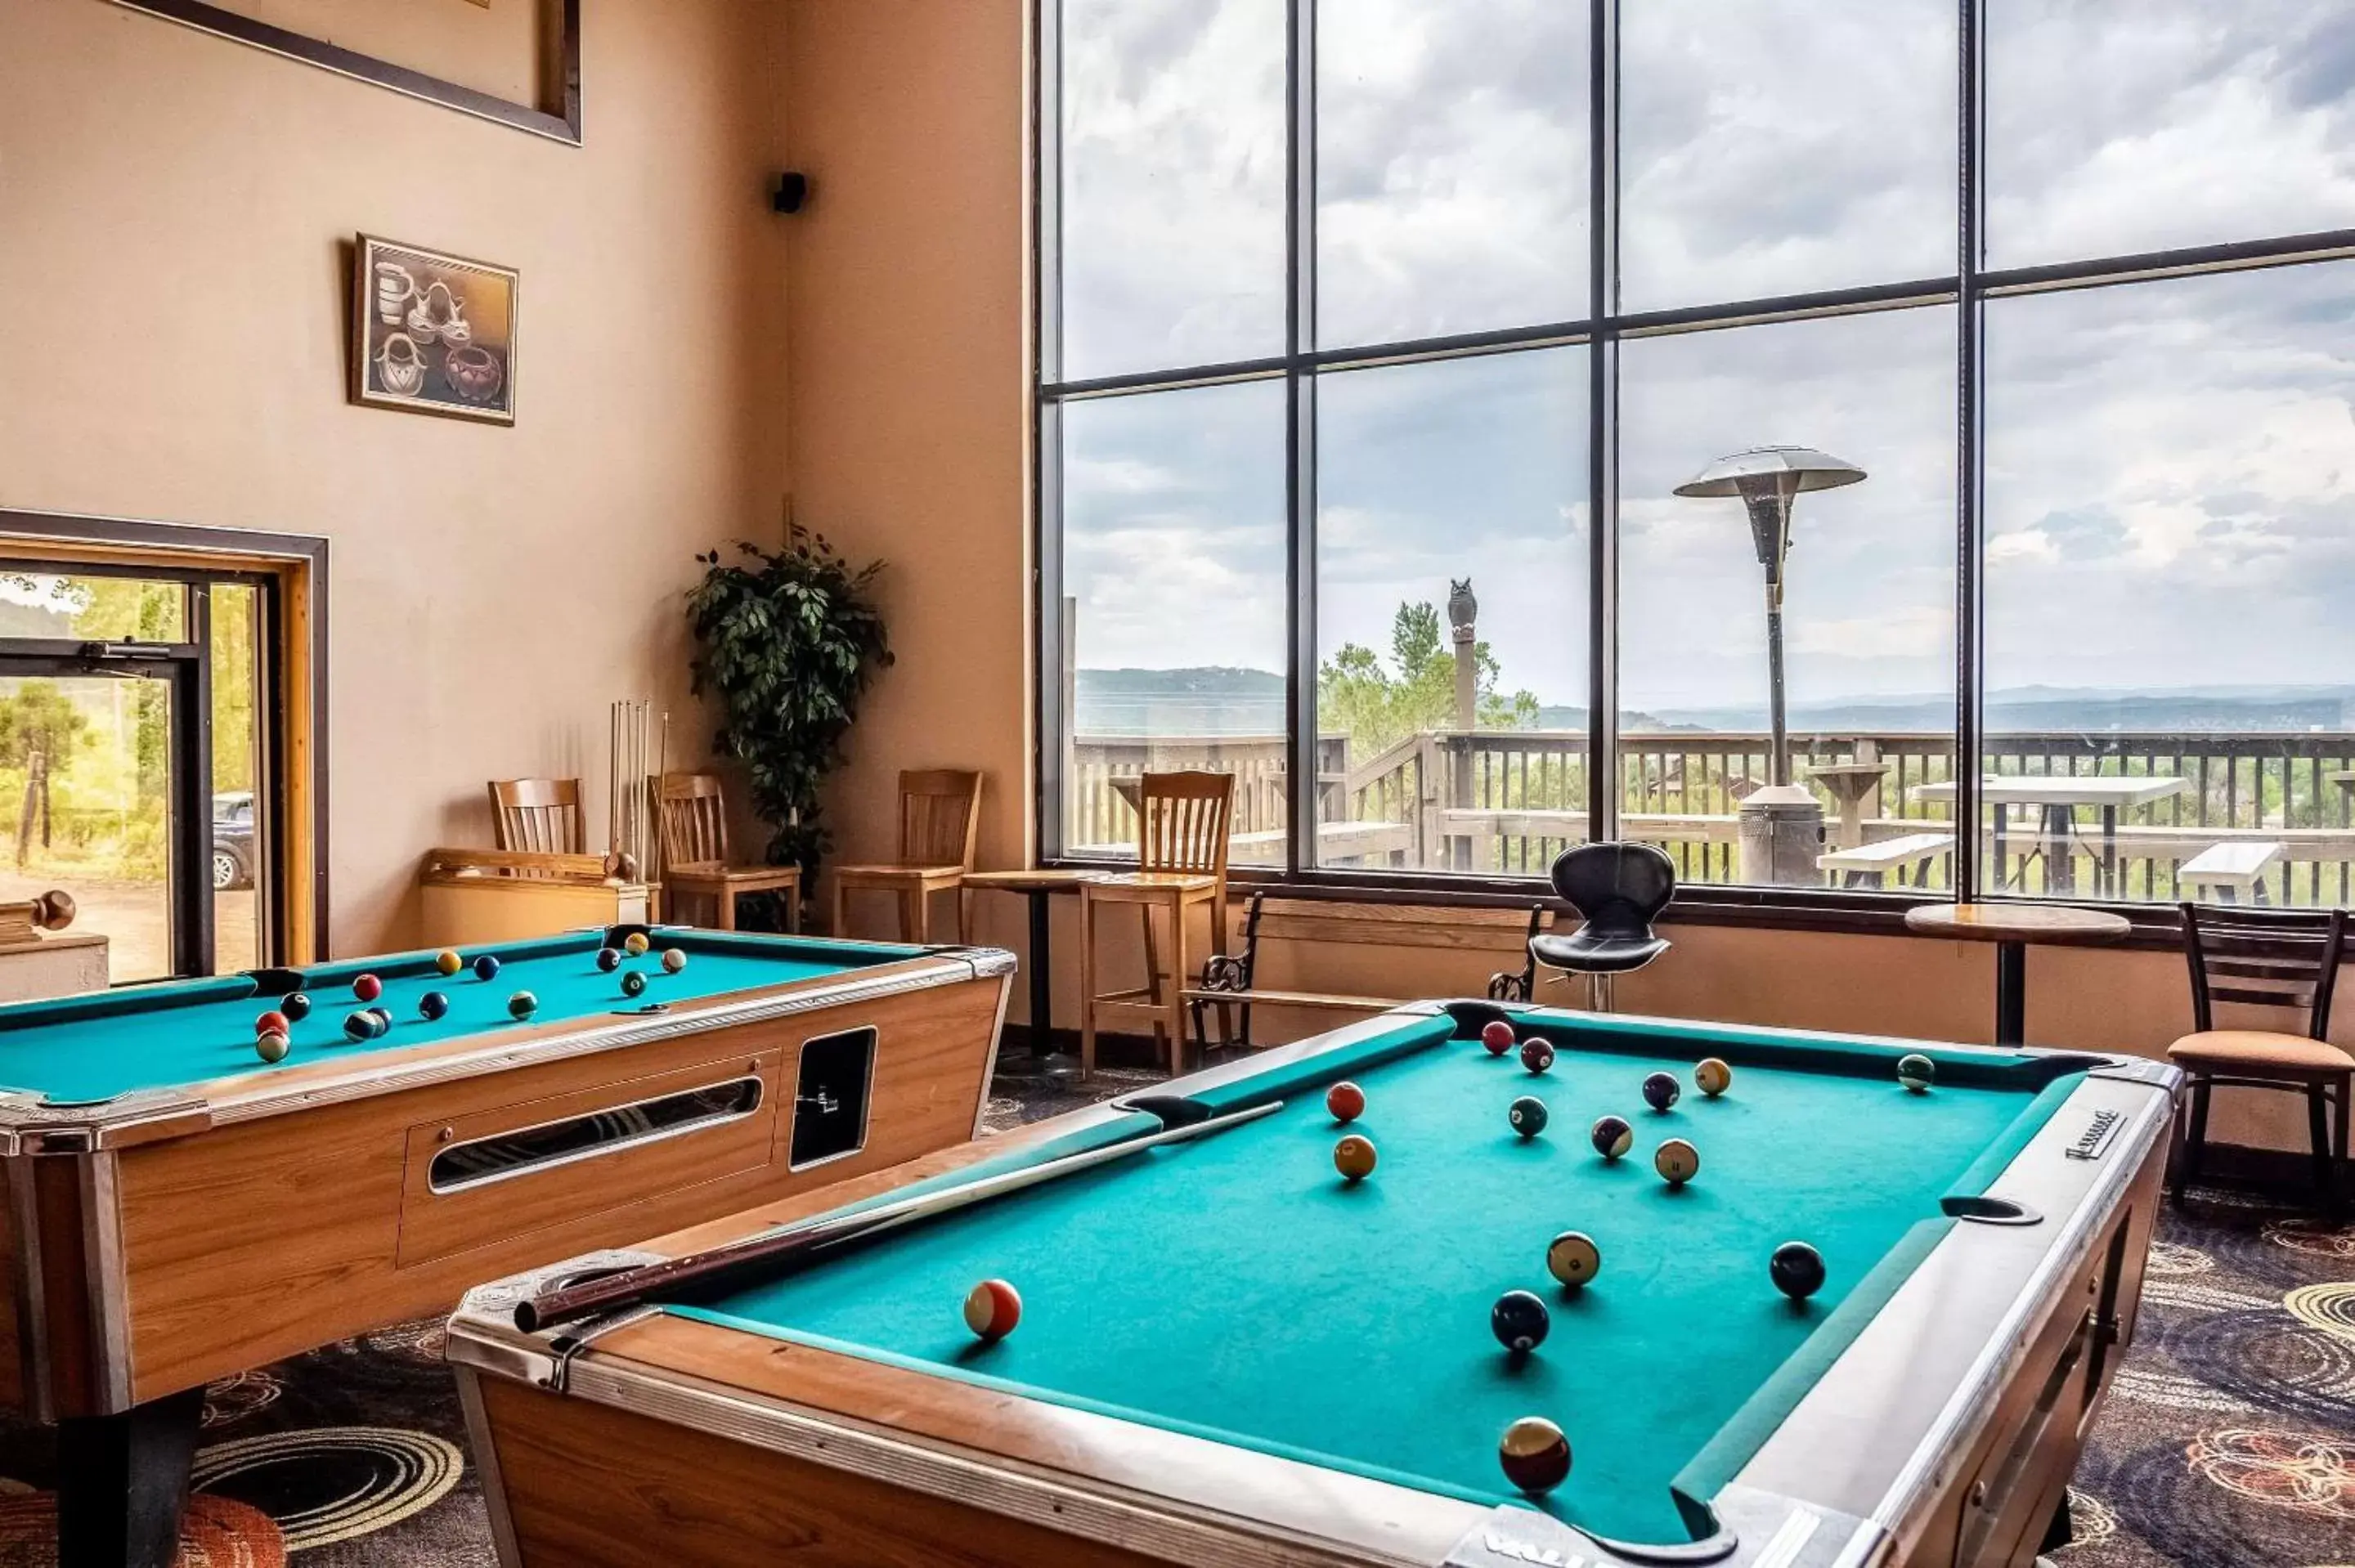 Lounge or bar, Billiards in Quality Inn Trinidad